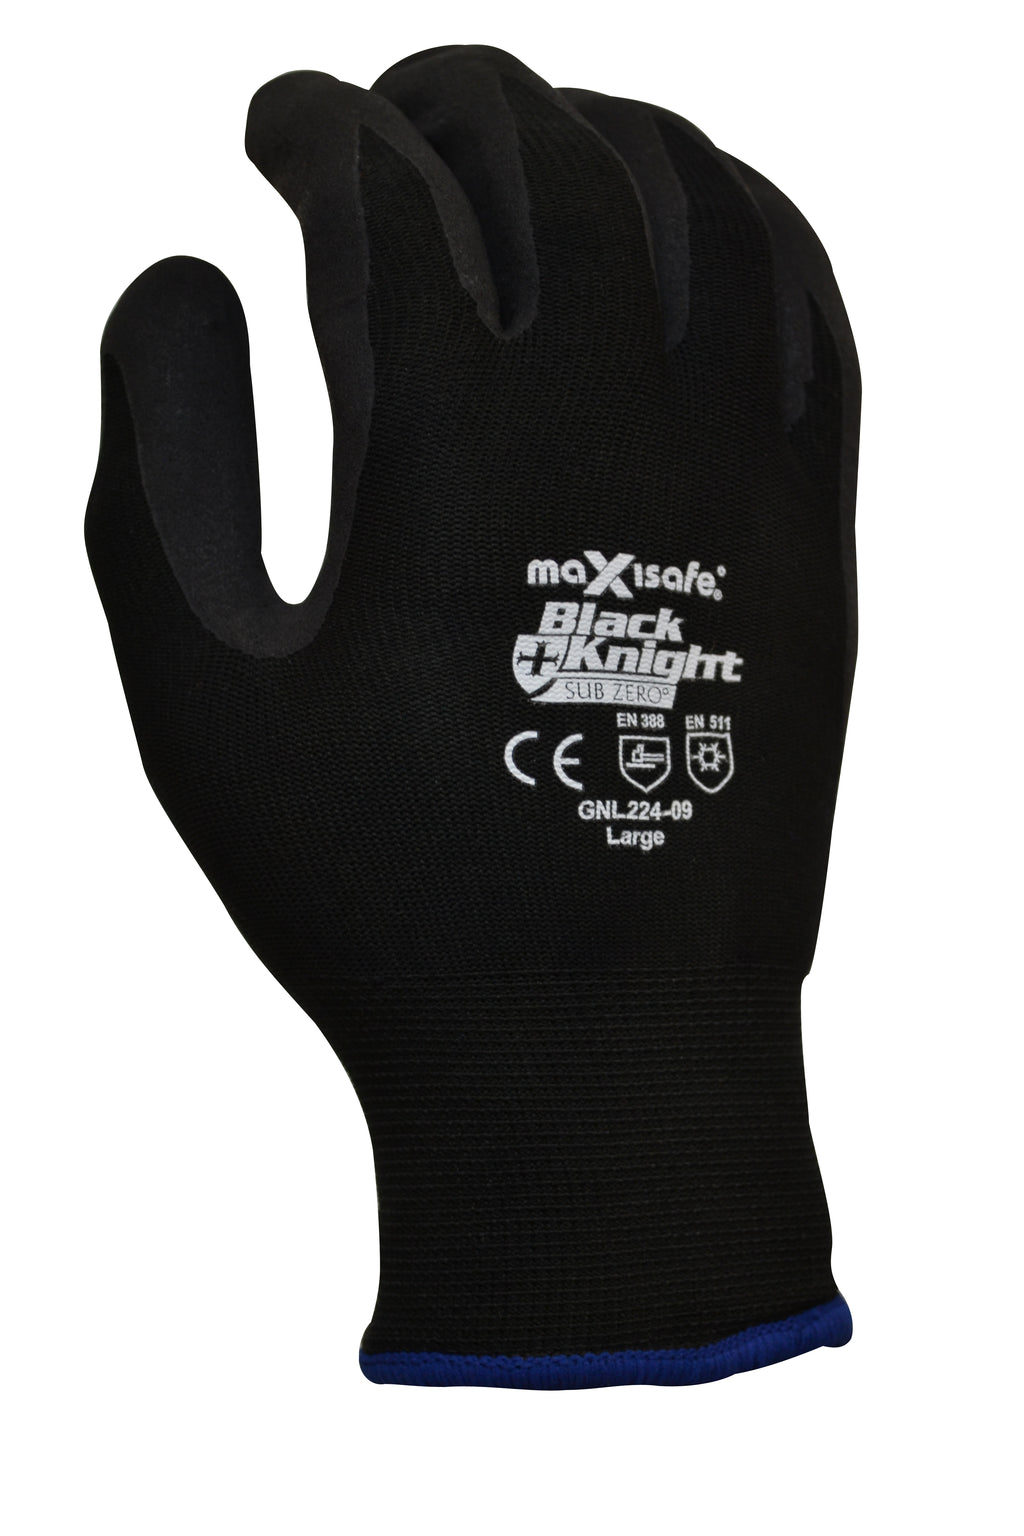 Black Knight Sub Zero Glove